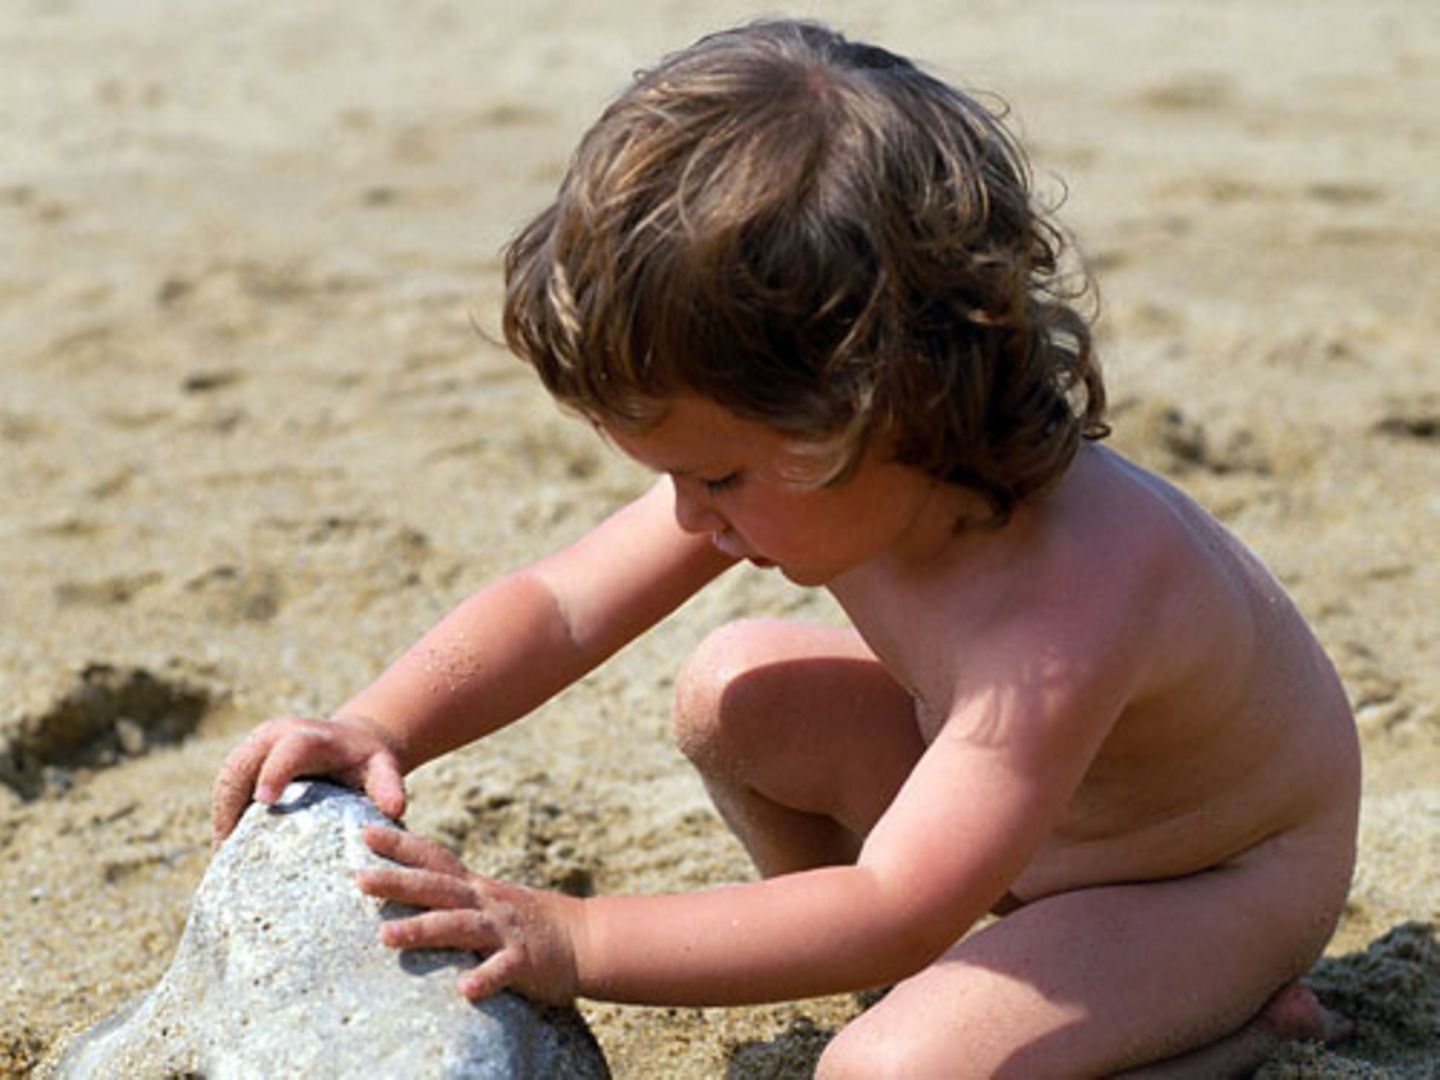 Nackt raus in die pralle Sonne - viele Eltern setzen ihre Kinder auf diese Weise einem hohen Hautkrebs-Risiko aus